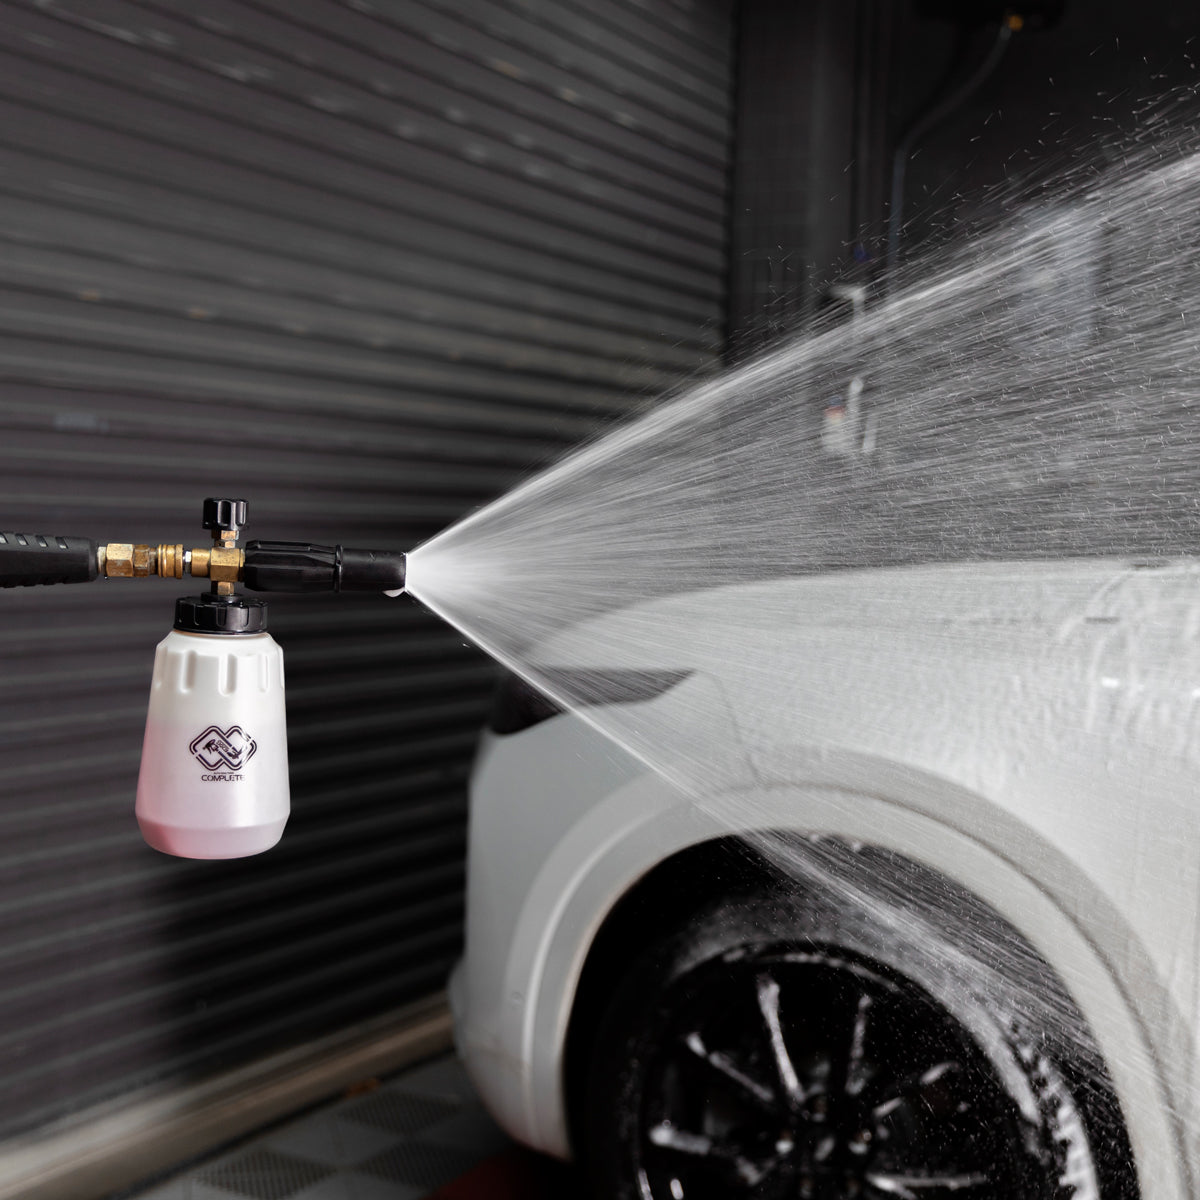 21 Item Arsenal Builder Car Wash Kit – SGCB AUTOCARE